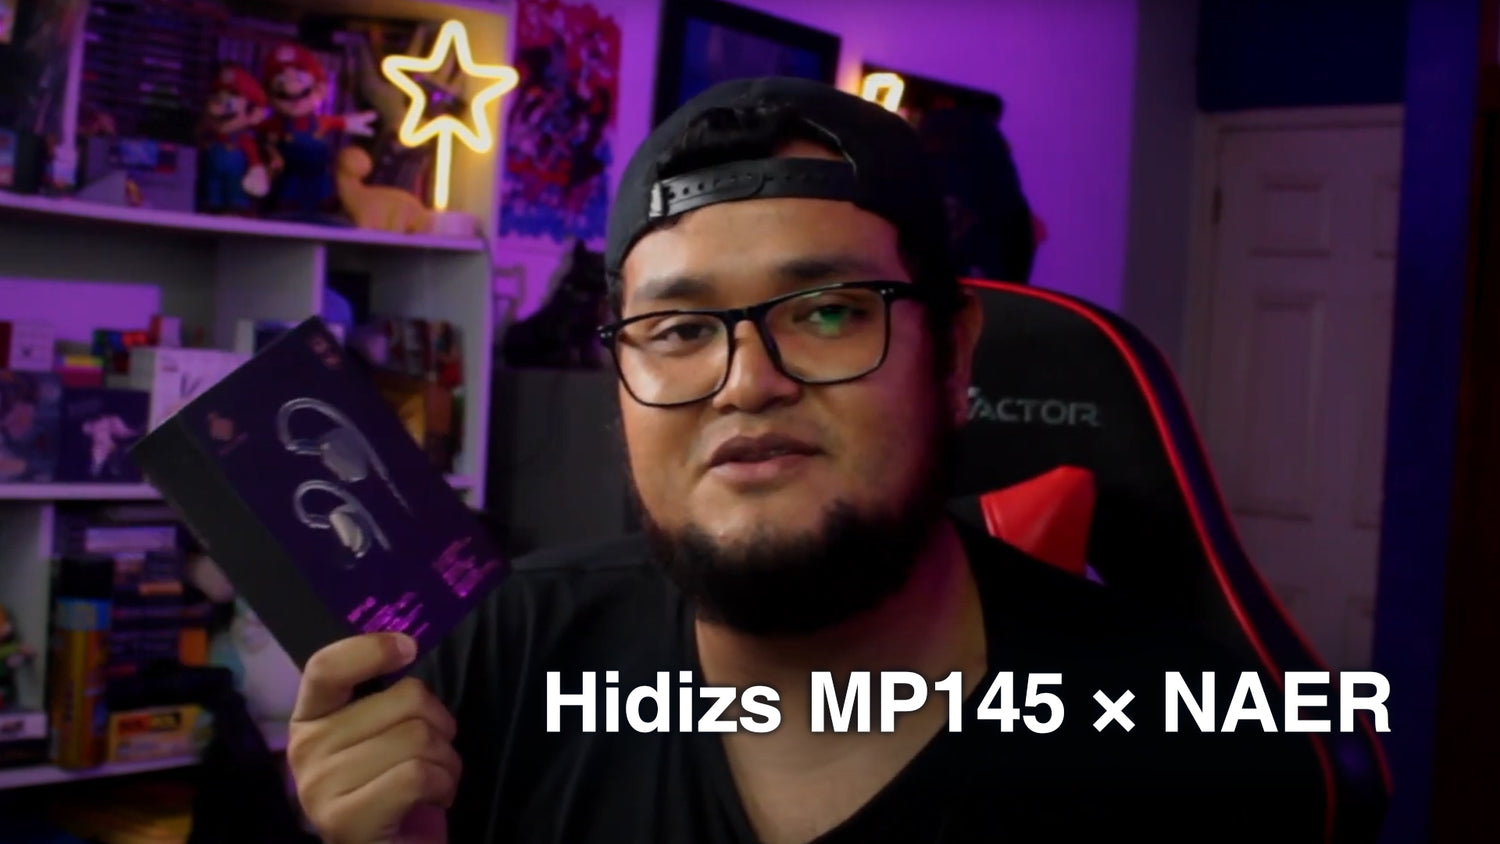 Hidizs MM2 Review - Prime Audio Reviews